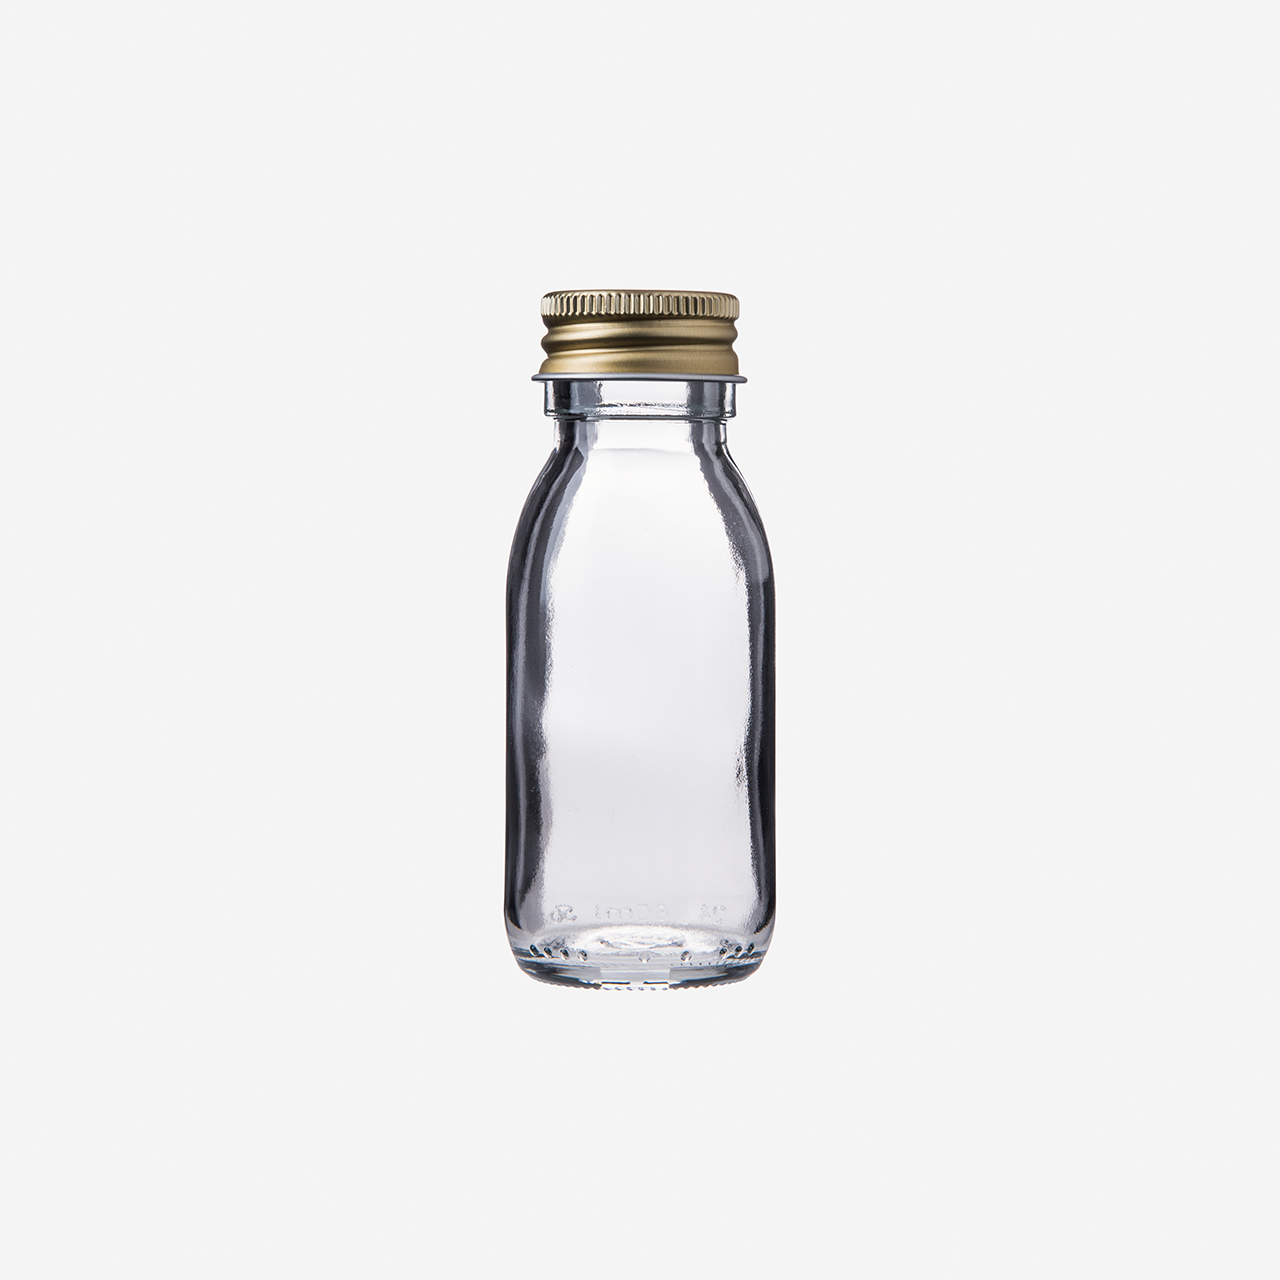 Shotglasflasche, 60 ml mit goldenem Schraubverschluss